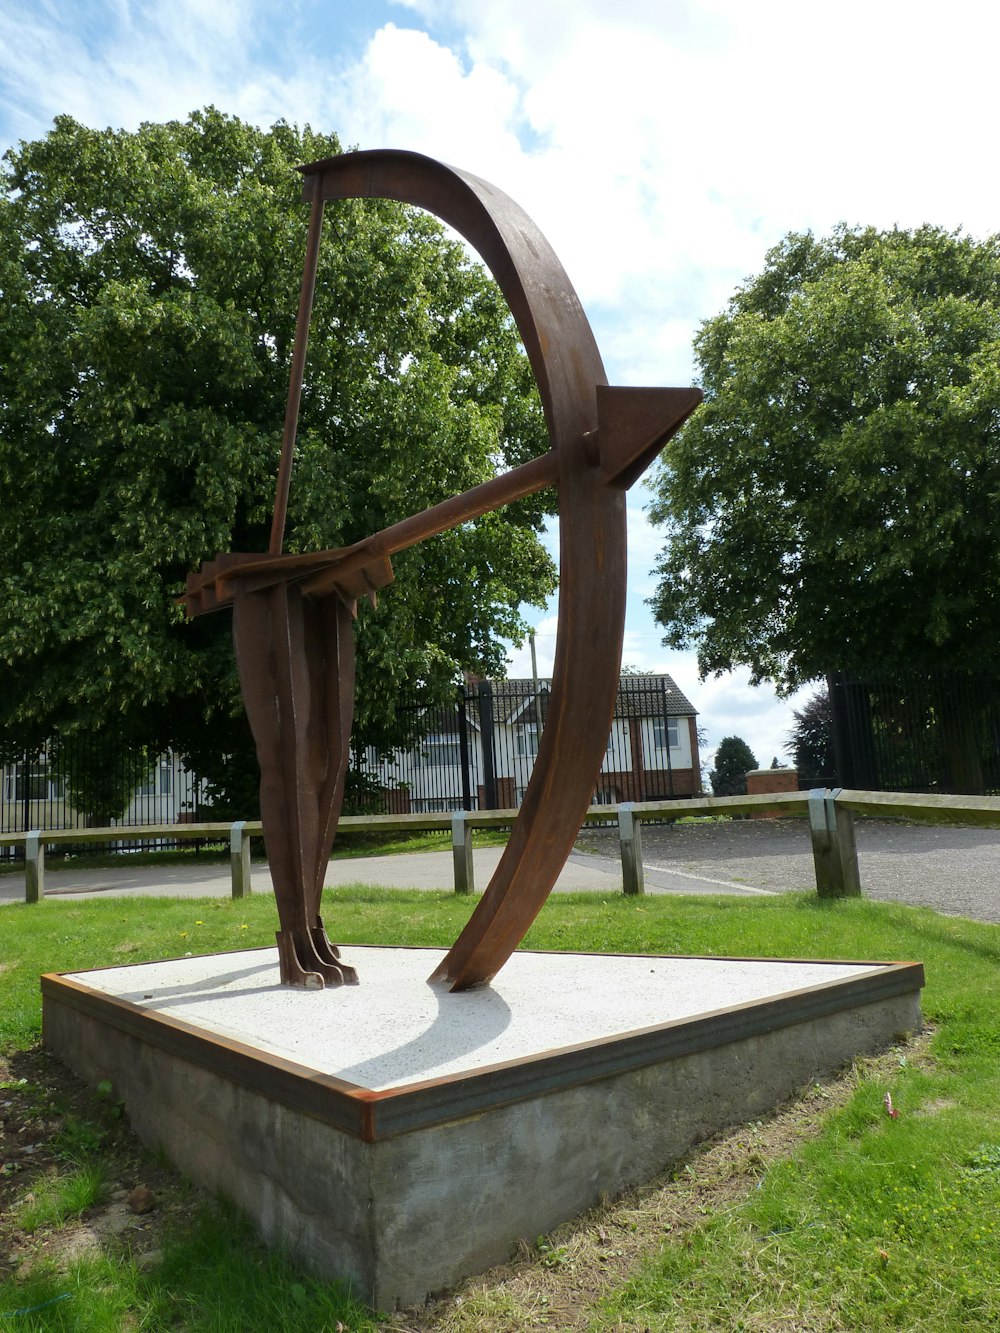 Una estatua de una persona sosteniendo un arco en un parque